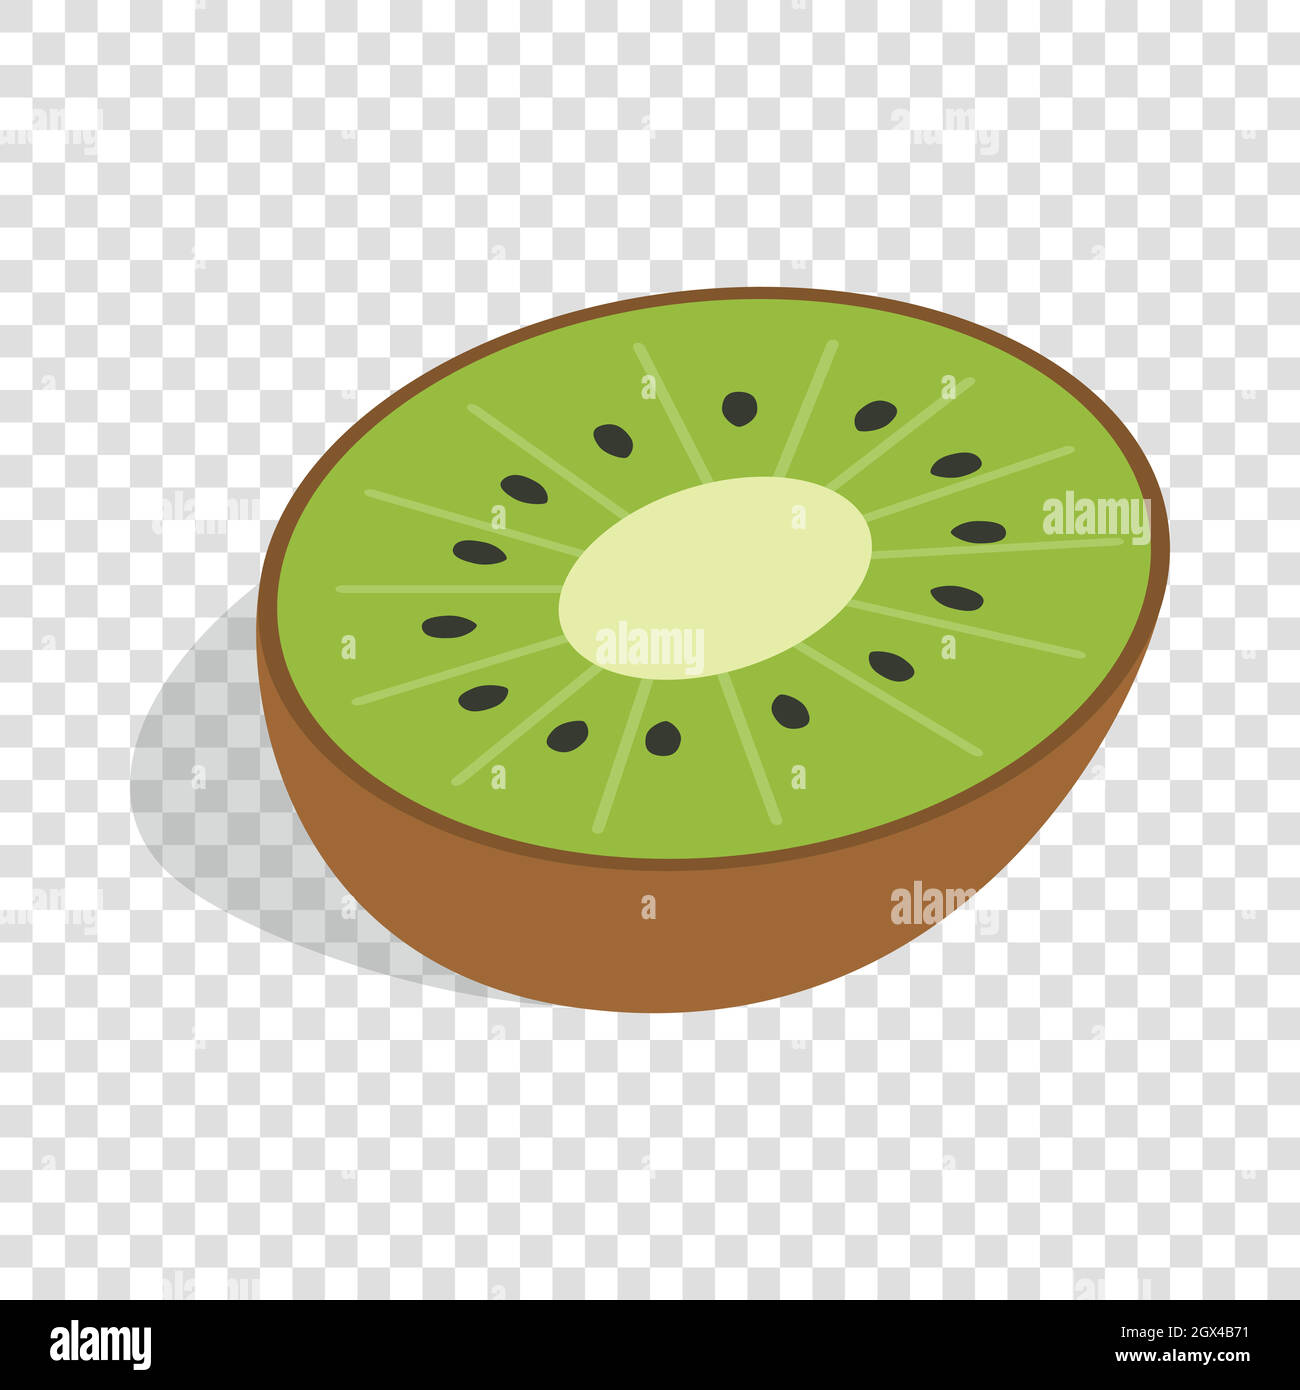 Half of kiwi fruit isometric icon Stock Vector